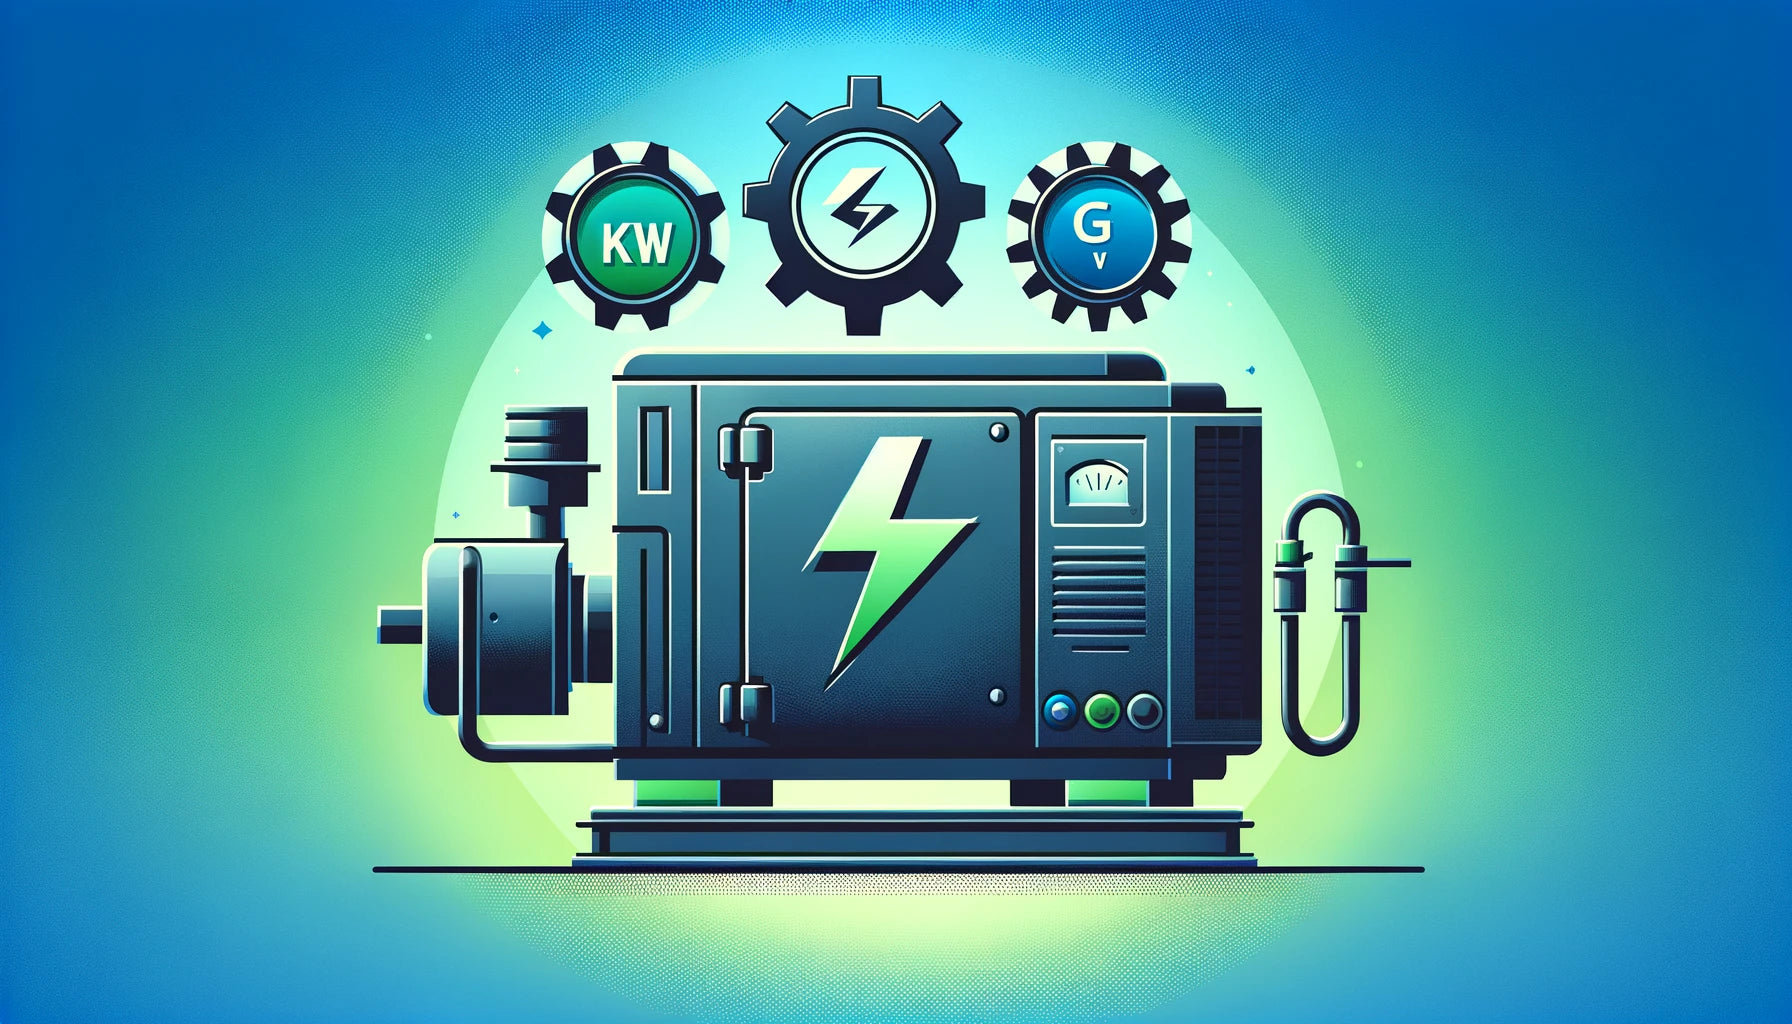 Potencia de un generador eléctrico. Diferencia entre Watts, Kw y kVA